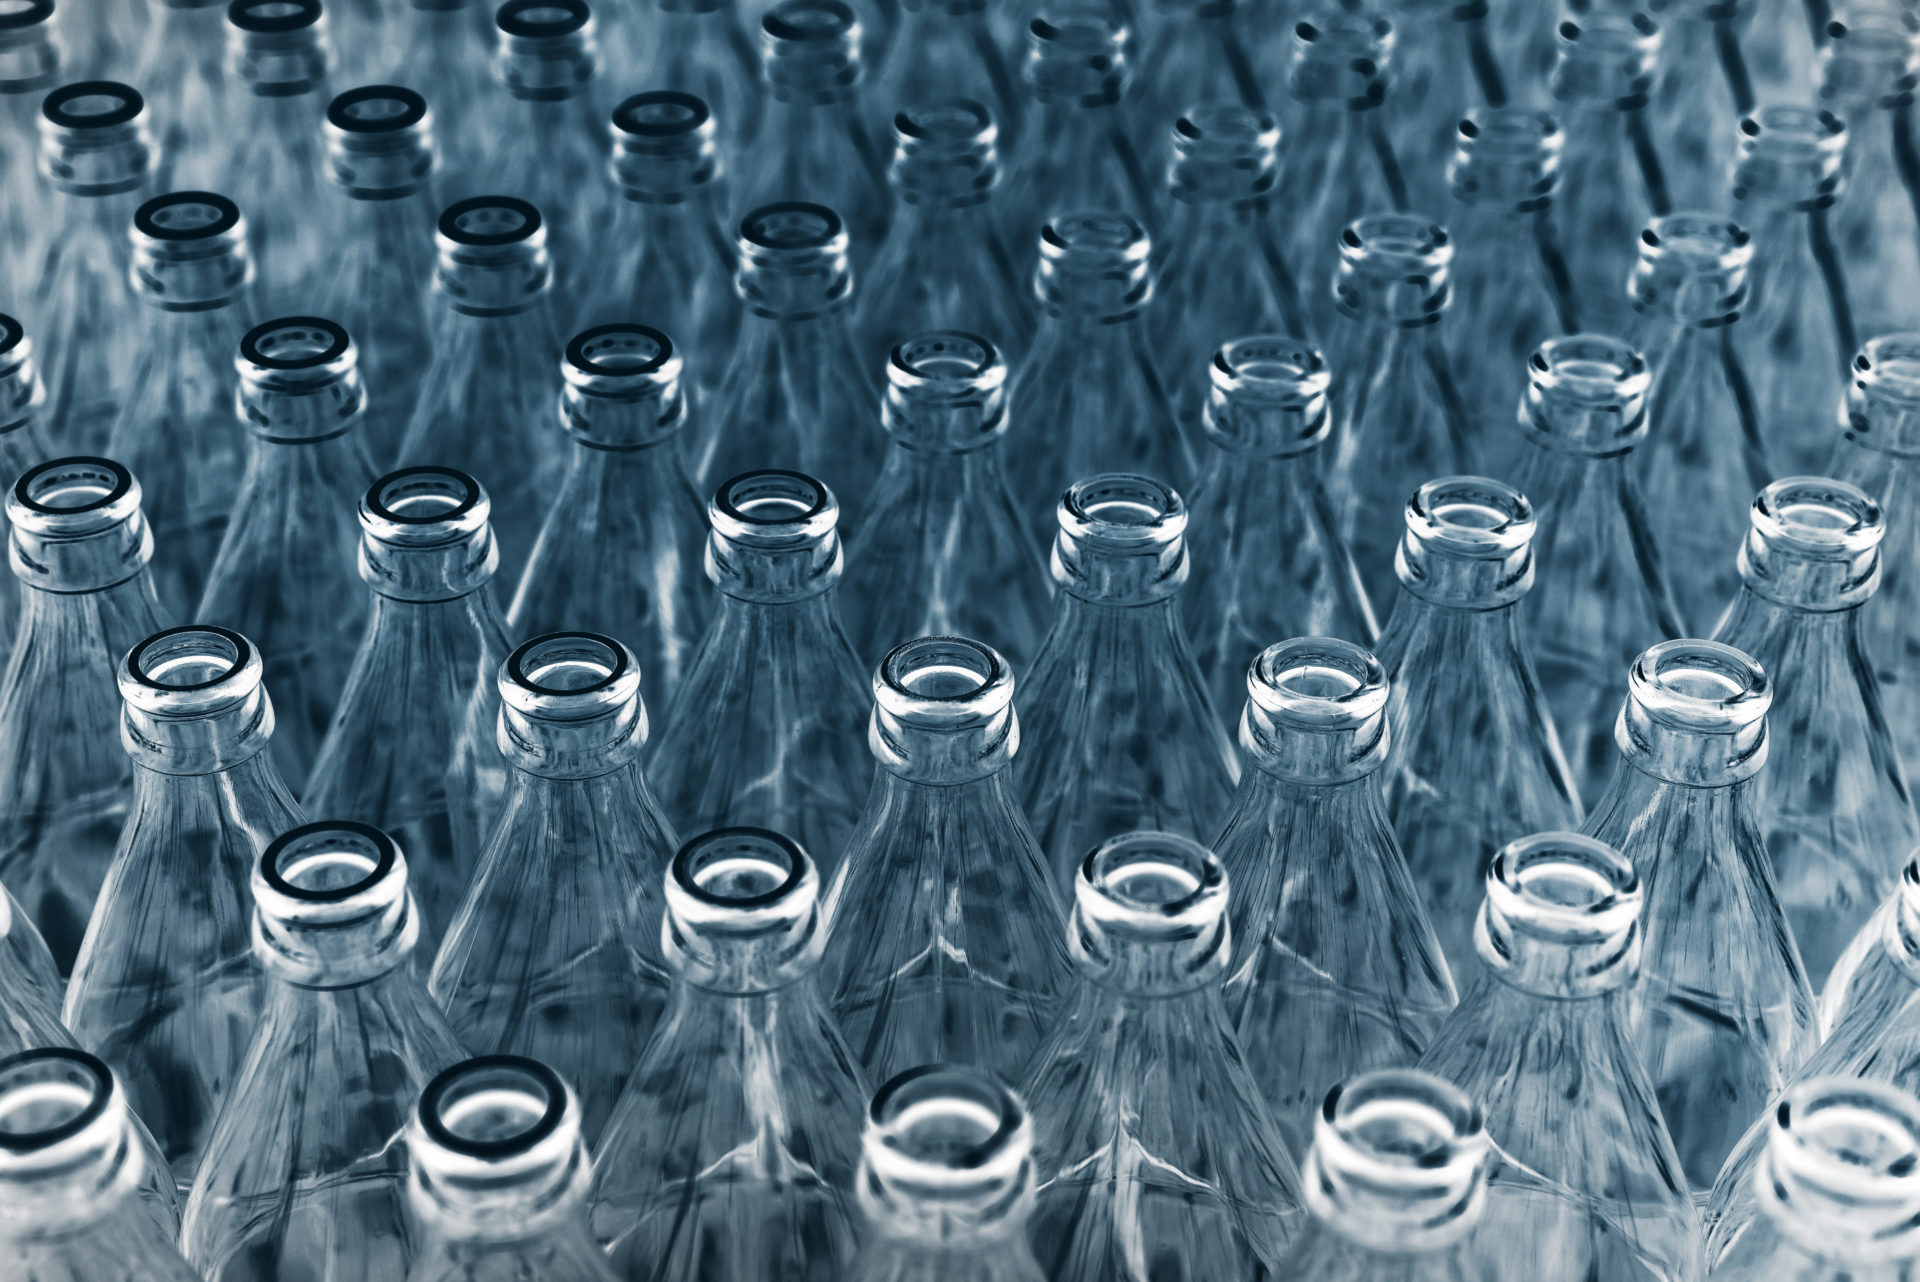 Plástico o vidrio? envases sostenibles - Fundación Aquae